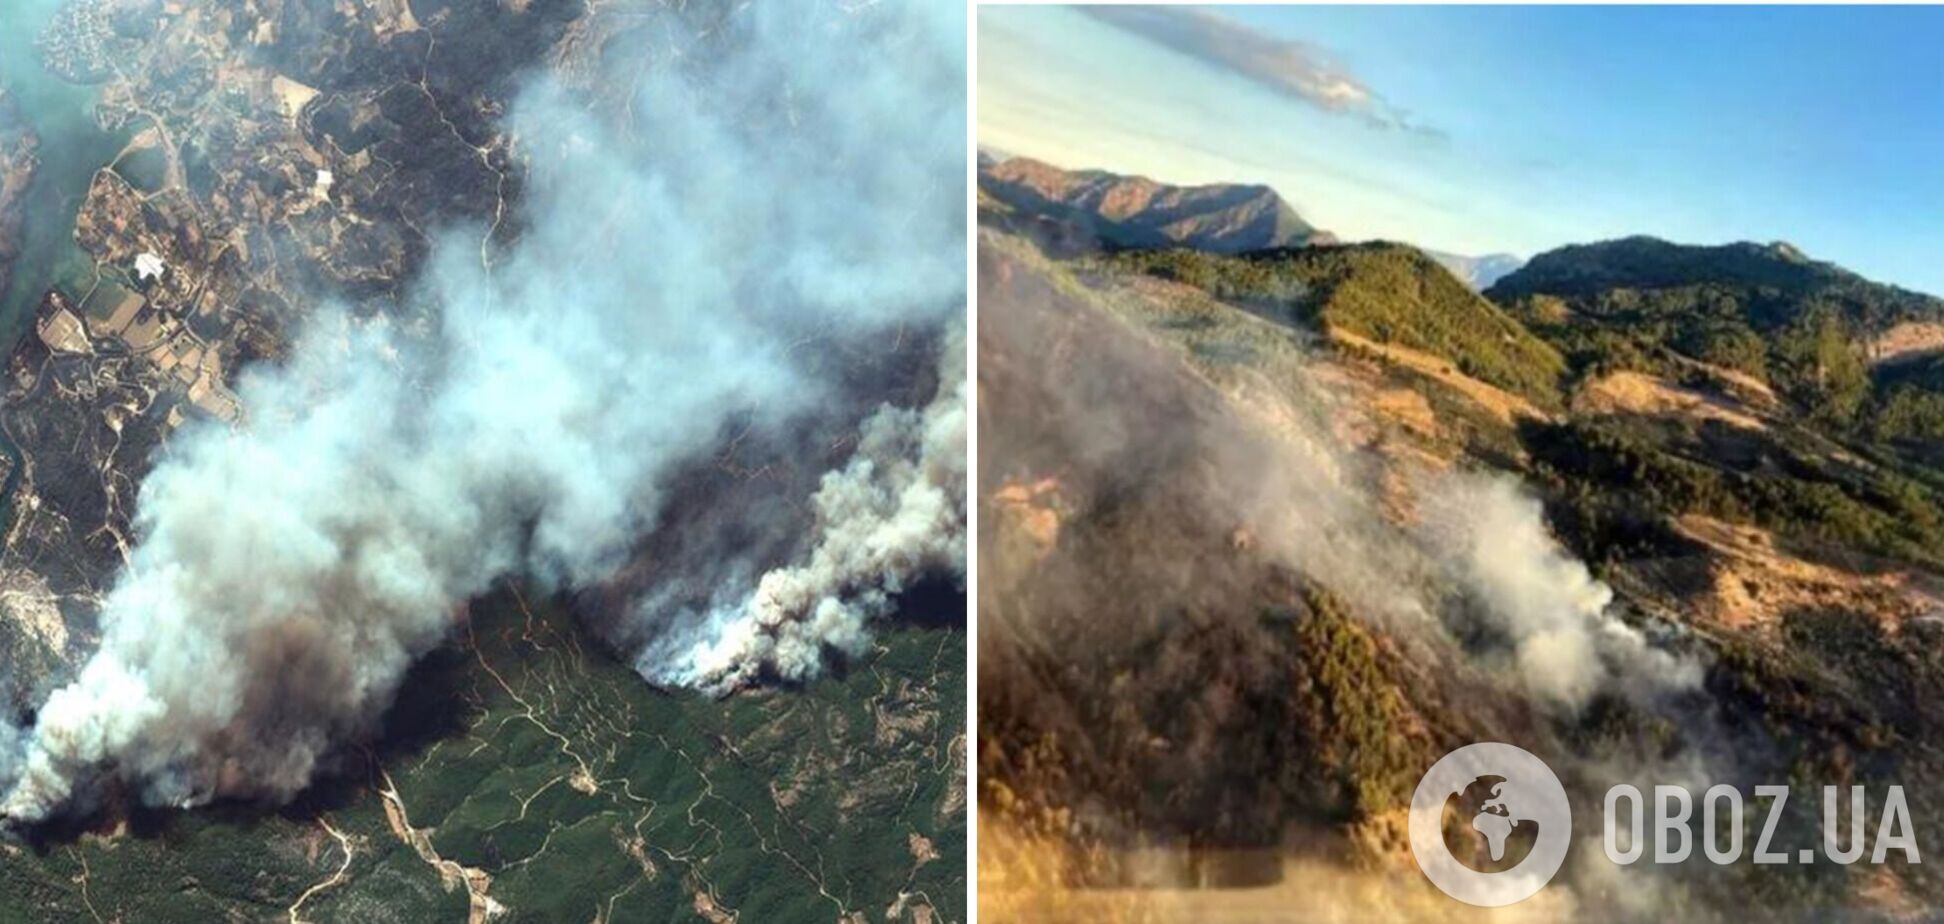 В Турции произошел масштабный лесной пожар, огонь удалось локализировать. Фото и видео